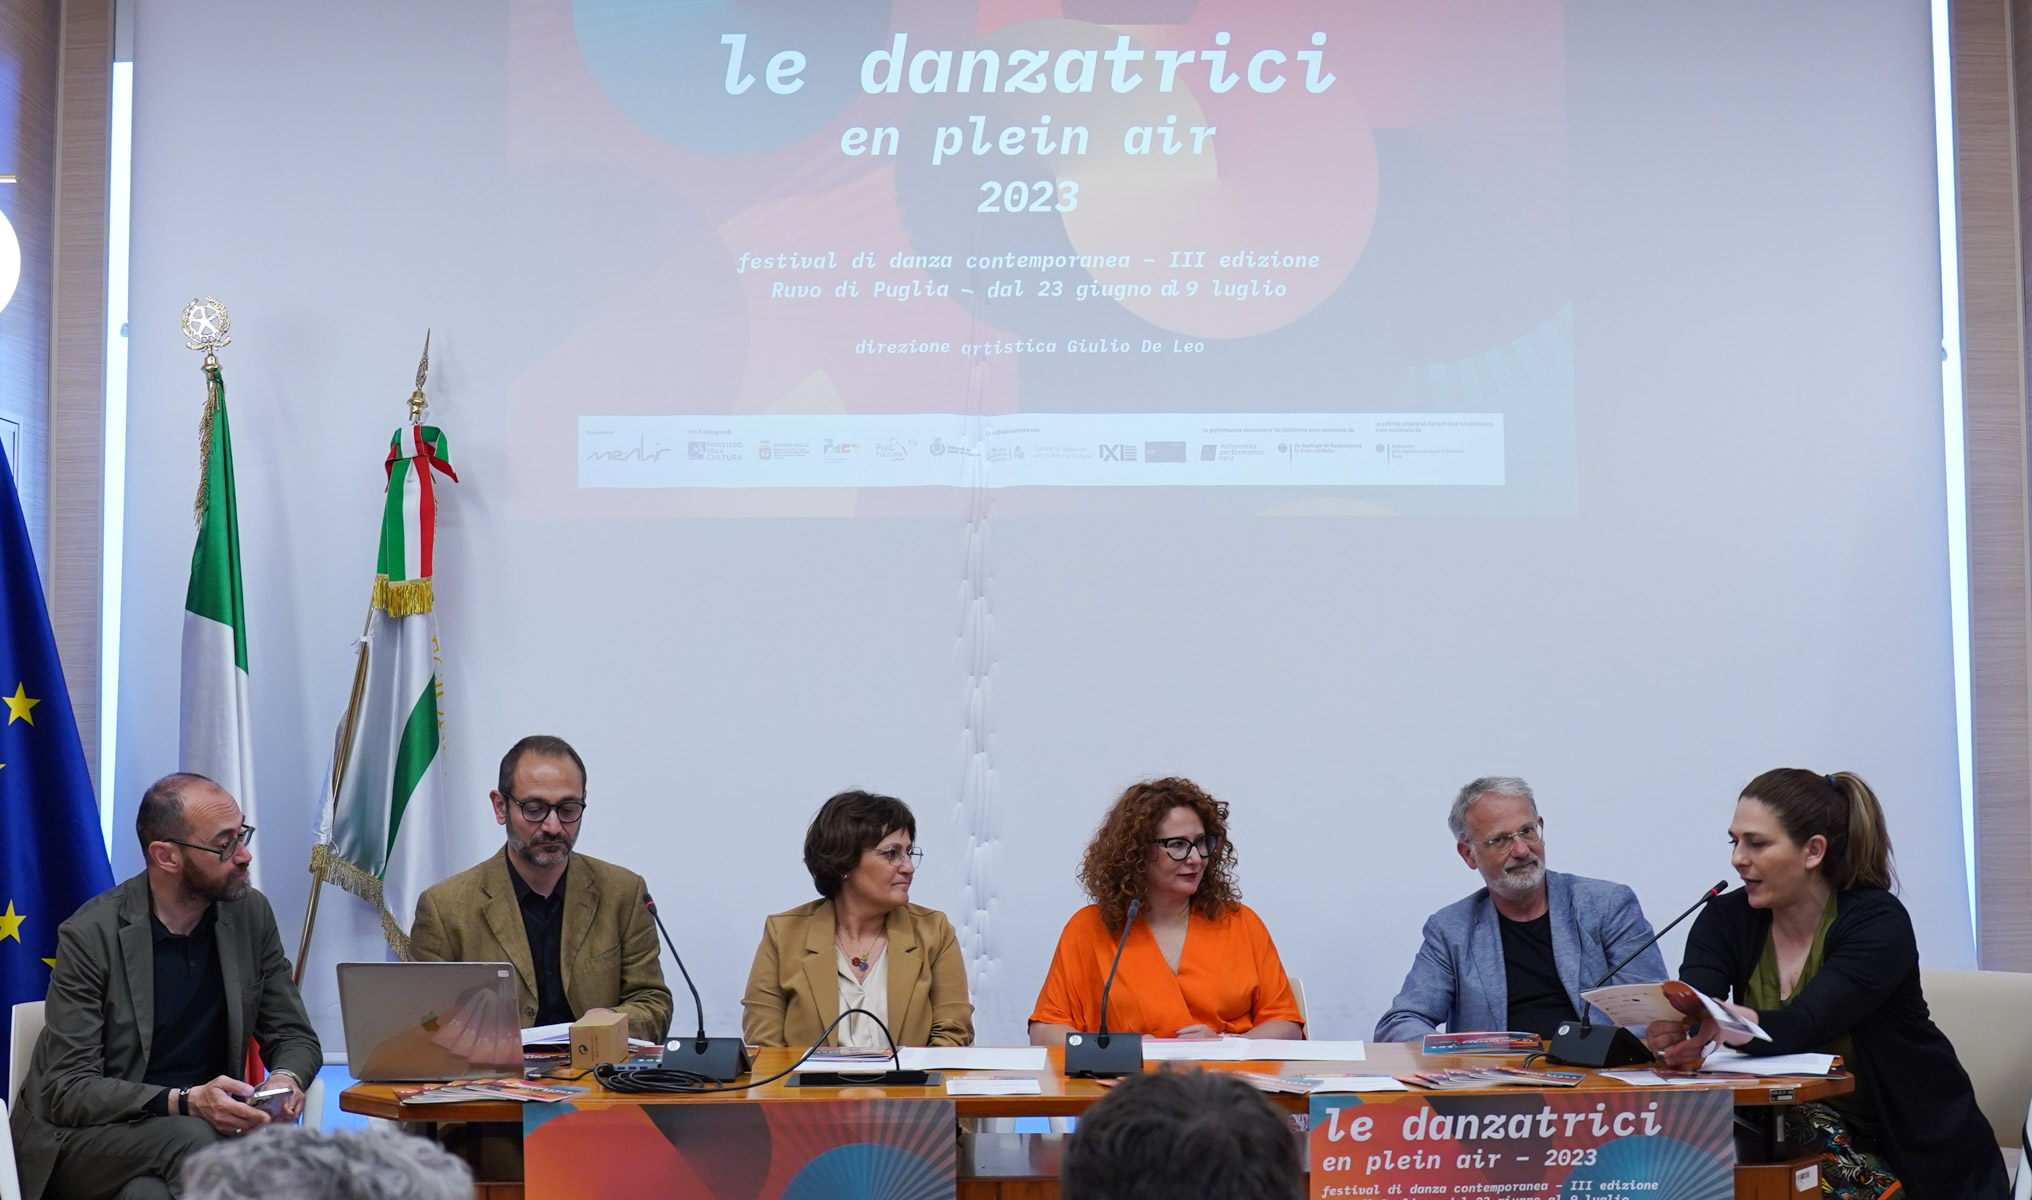 Galleria “LE DANZATRICI en plein air”, a Ruvo di Puglia la terza edizione del Festival internazionale di Danza Contemporanea - Diapositiva 9 di 9